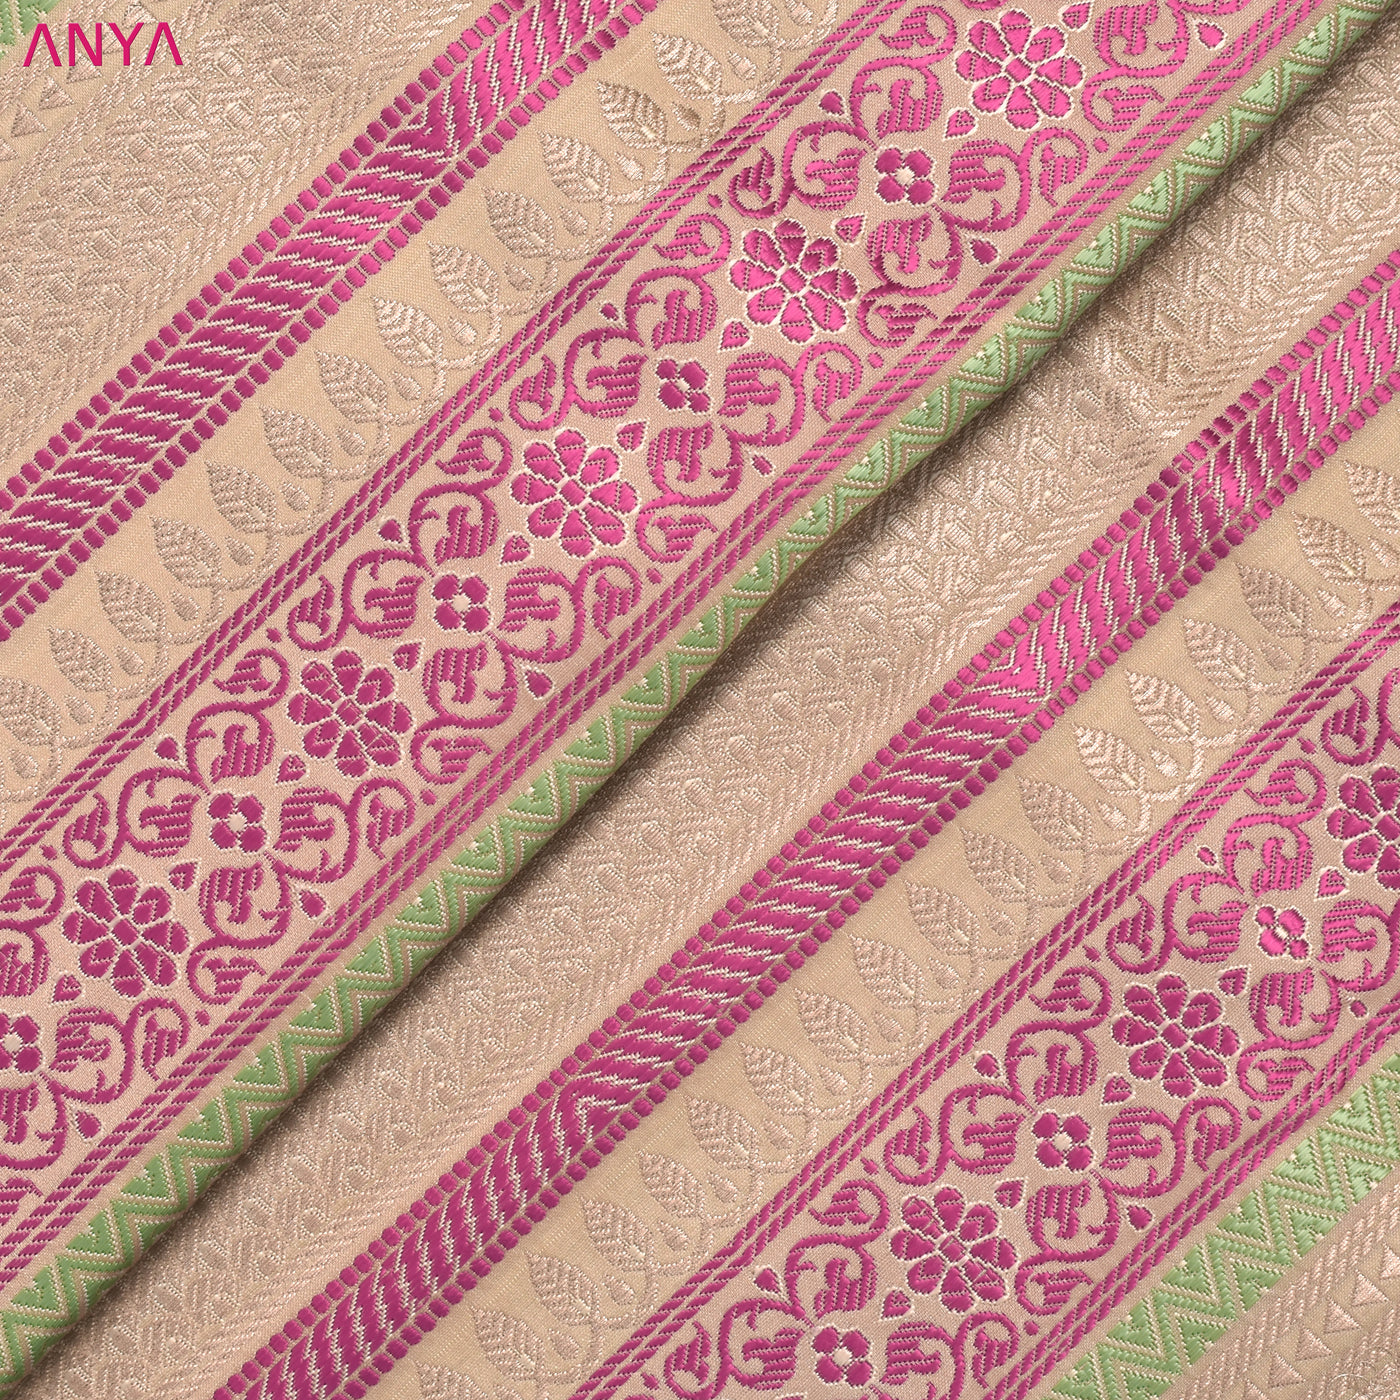 Off White and Multicolor Banarasi Silk Fabric with Zari Stripes Design